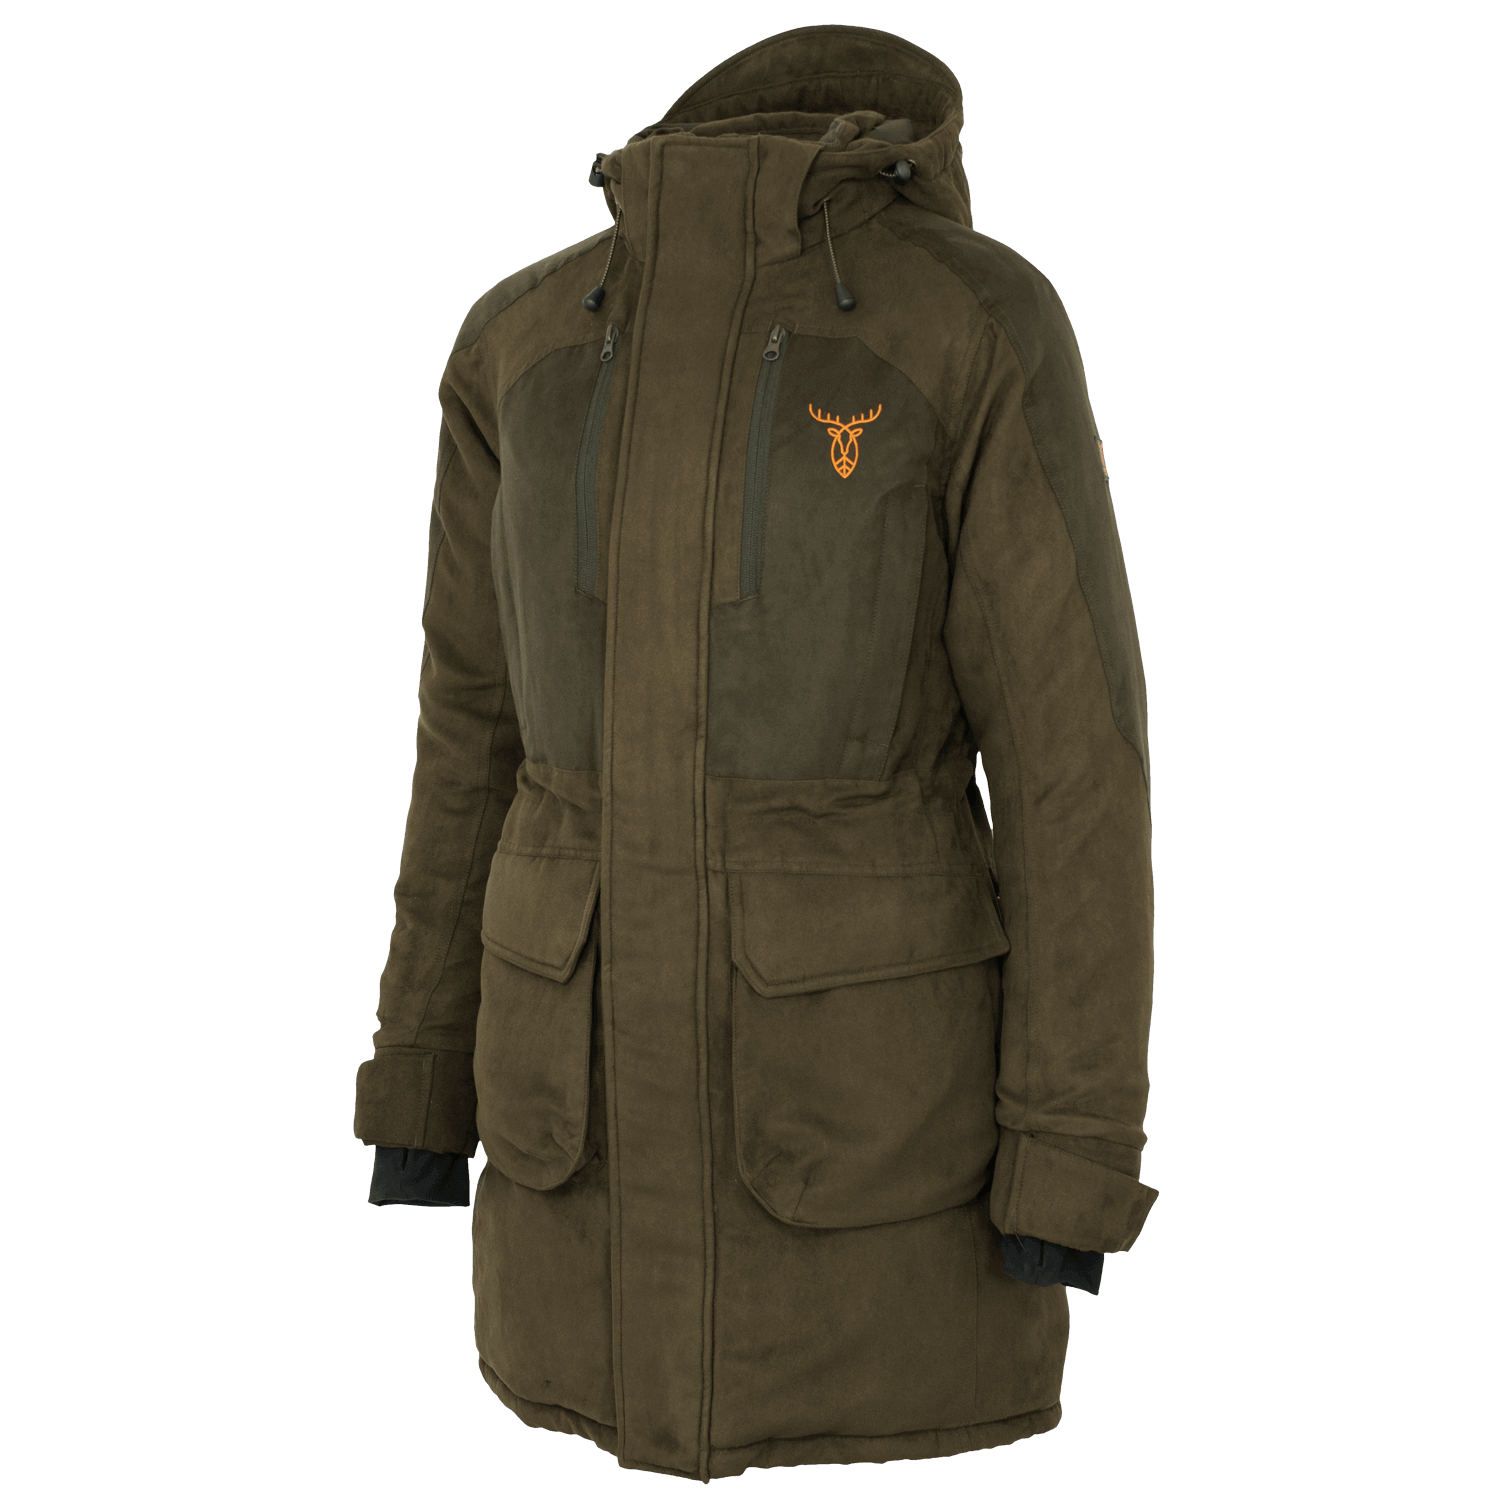 Pirscher Gear Polar Ladies Winter Jacket - Women's Hunting Clothing 